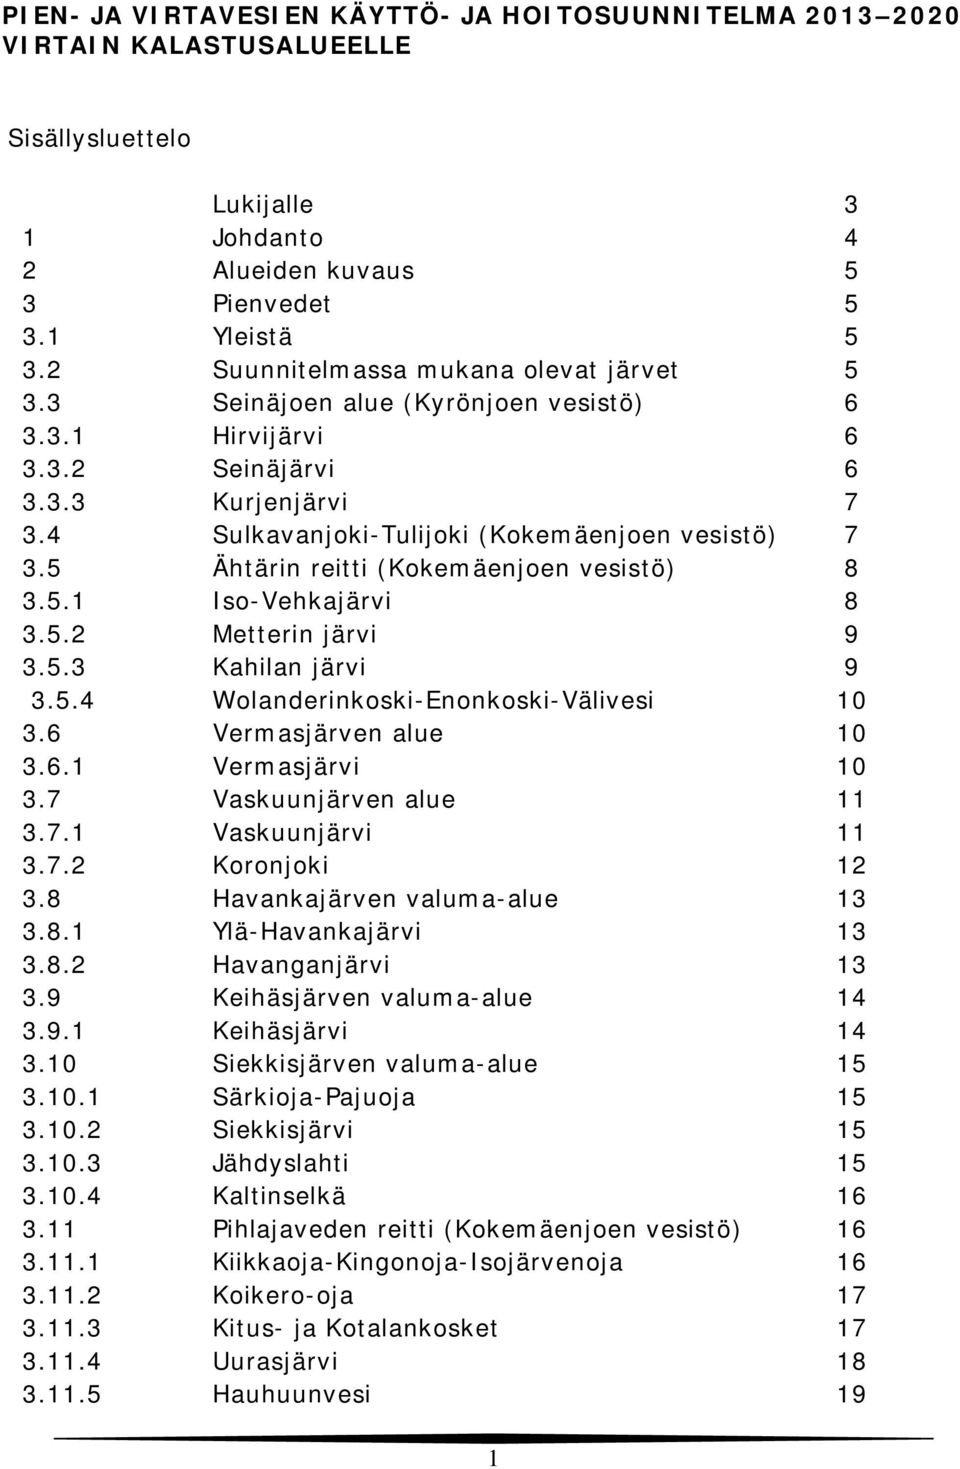 5 Ähtärin reitti (Kokemäenjoen vesistö) 8 3.5.1 Iso-Vehkajärvi 8 3.5.2 Metterin järvi 9 3.5.3 Kahilan järvi 9 3.5.4 Wolanderinkoski-Enonkoski-Välivesi 10 3.6 Vermasjärven alue 10 3.6.1 Vermasjärvi 10 3.